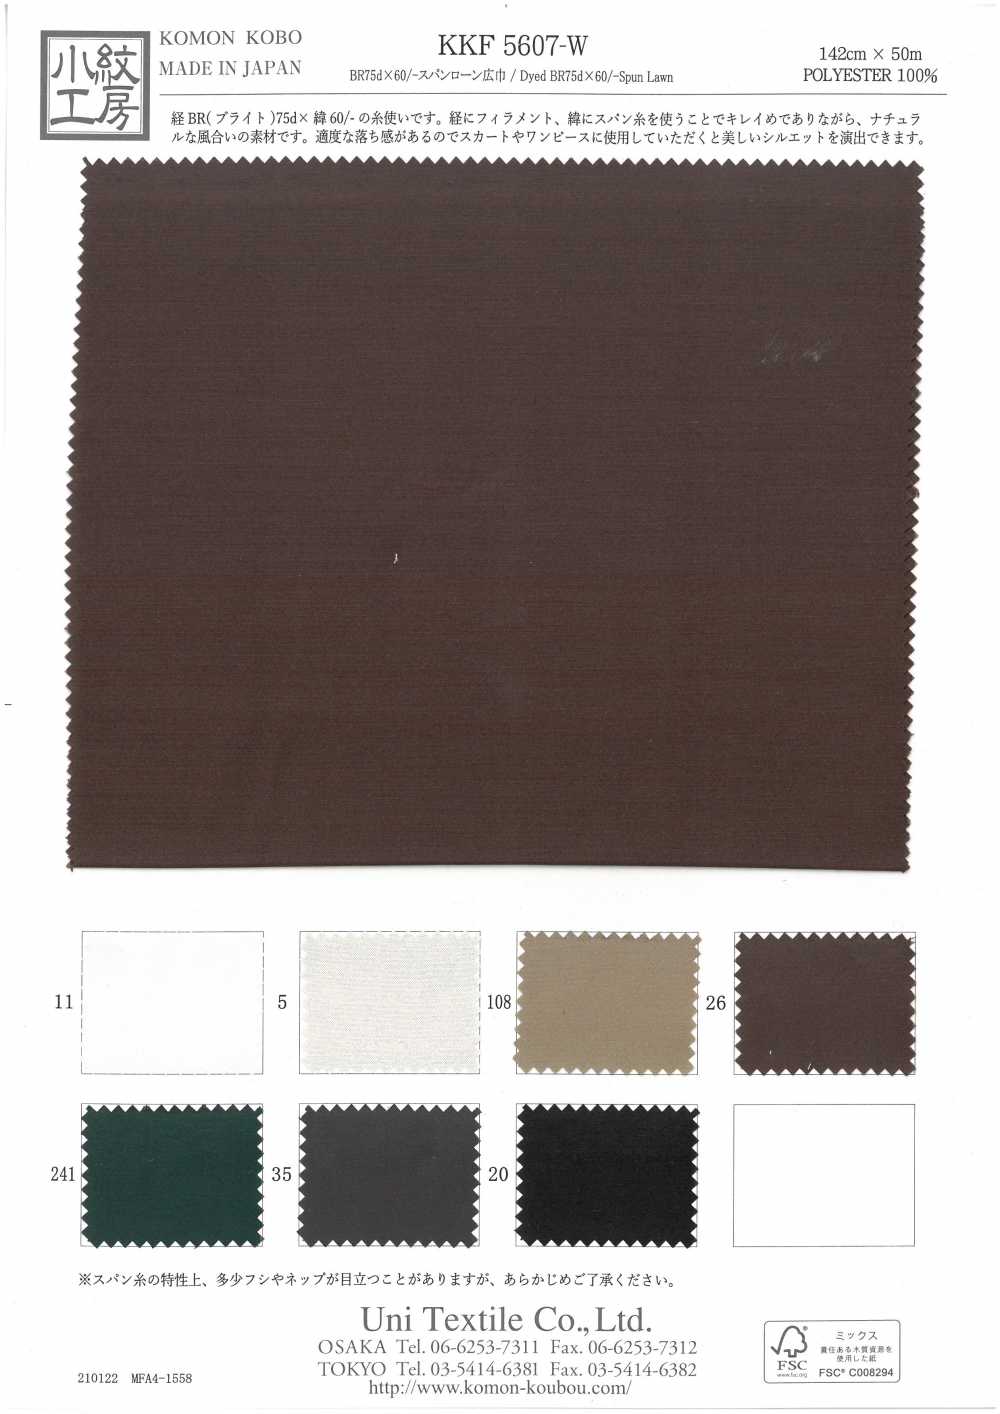 KKF5607-W BR754 × 60 / -Chiều Khổ Rộng Vải Cotton Lawn Ngắn Uni Textile